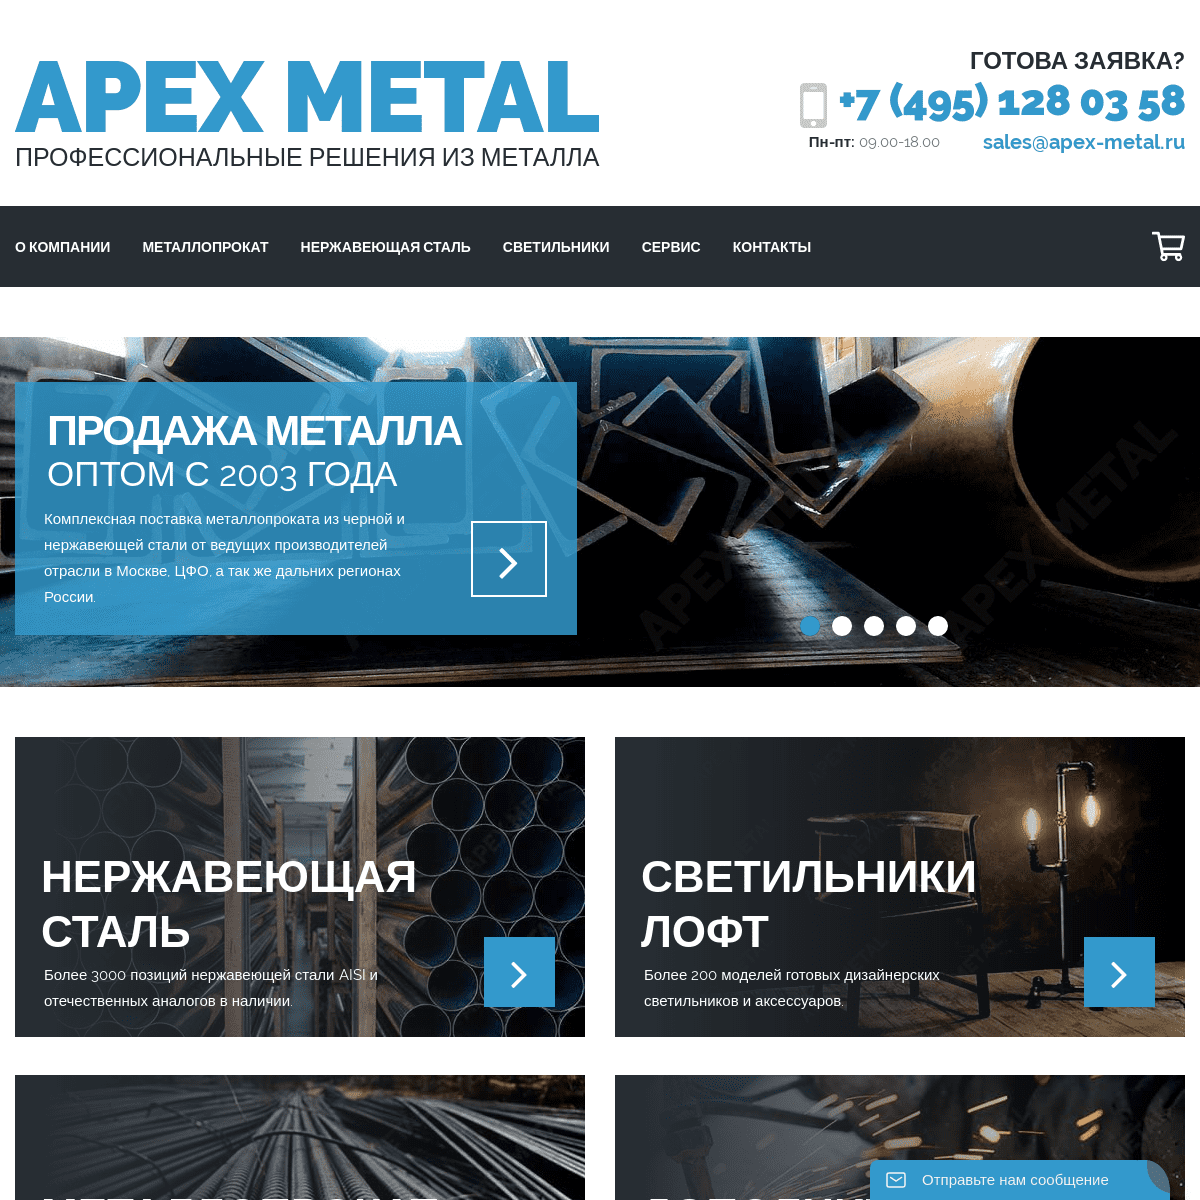 A complete backup of apex-metal.ru